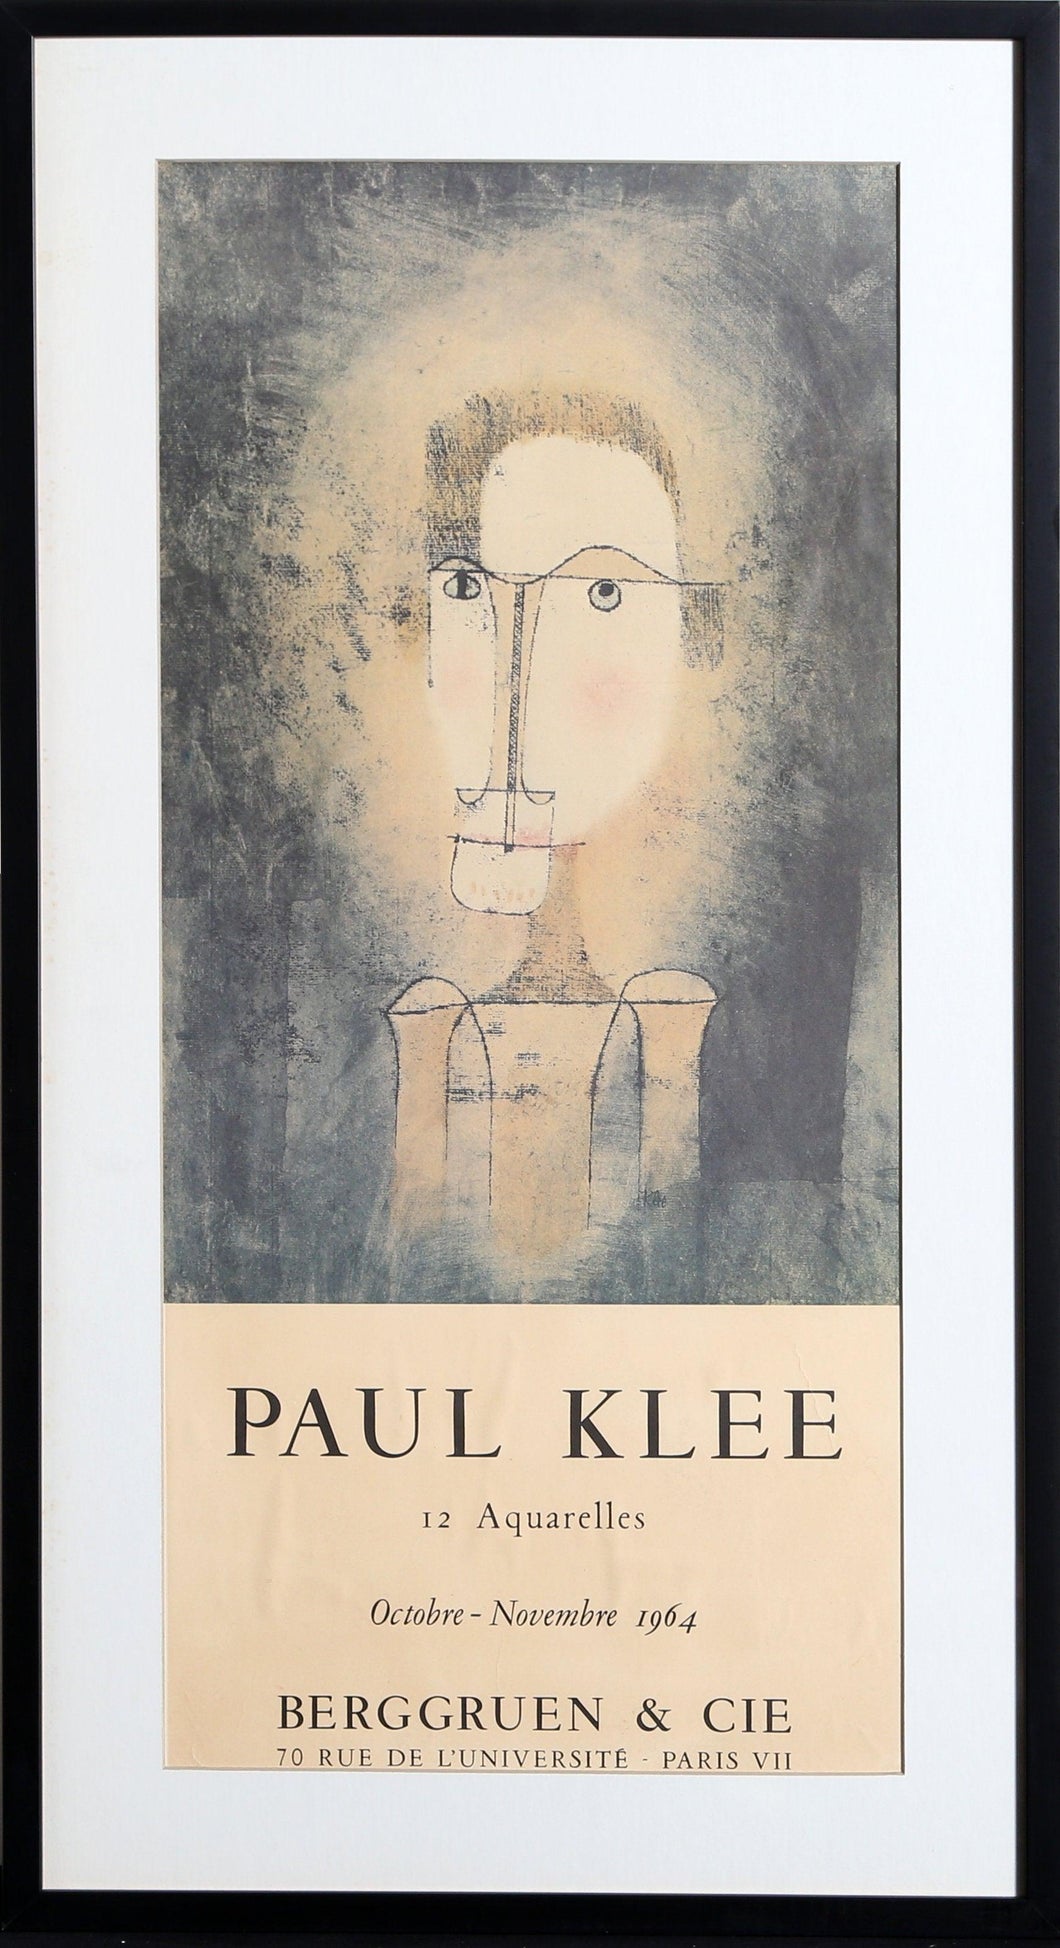 12 Aquarelles at Berggruen & Cie Poster | Paul Klee,{{product.type}}